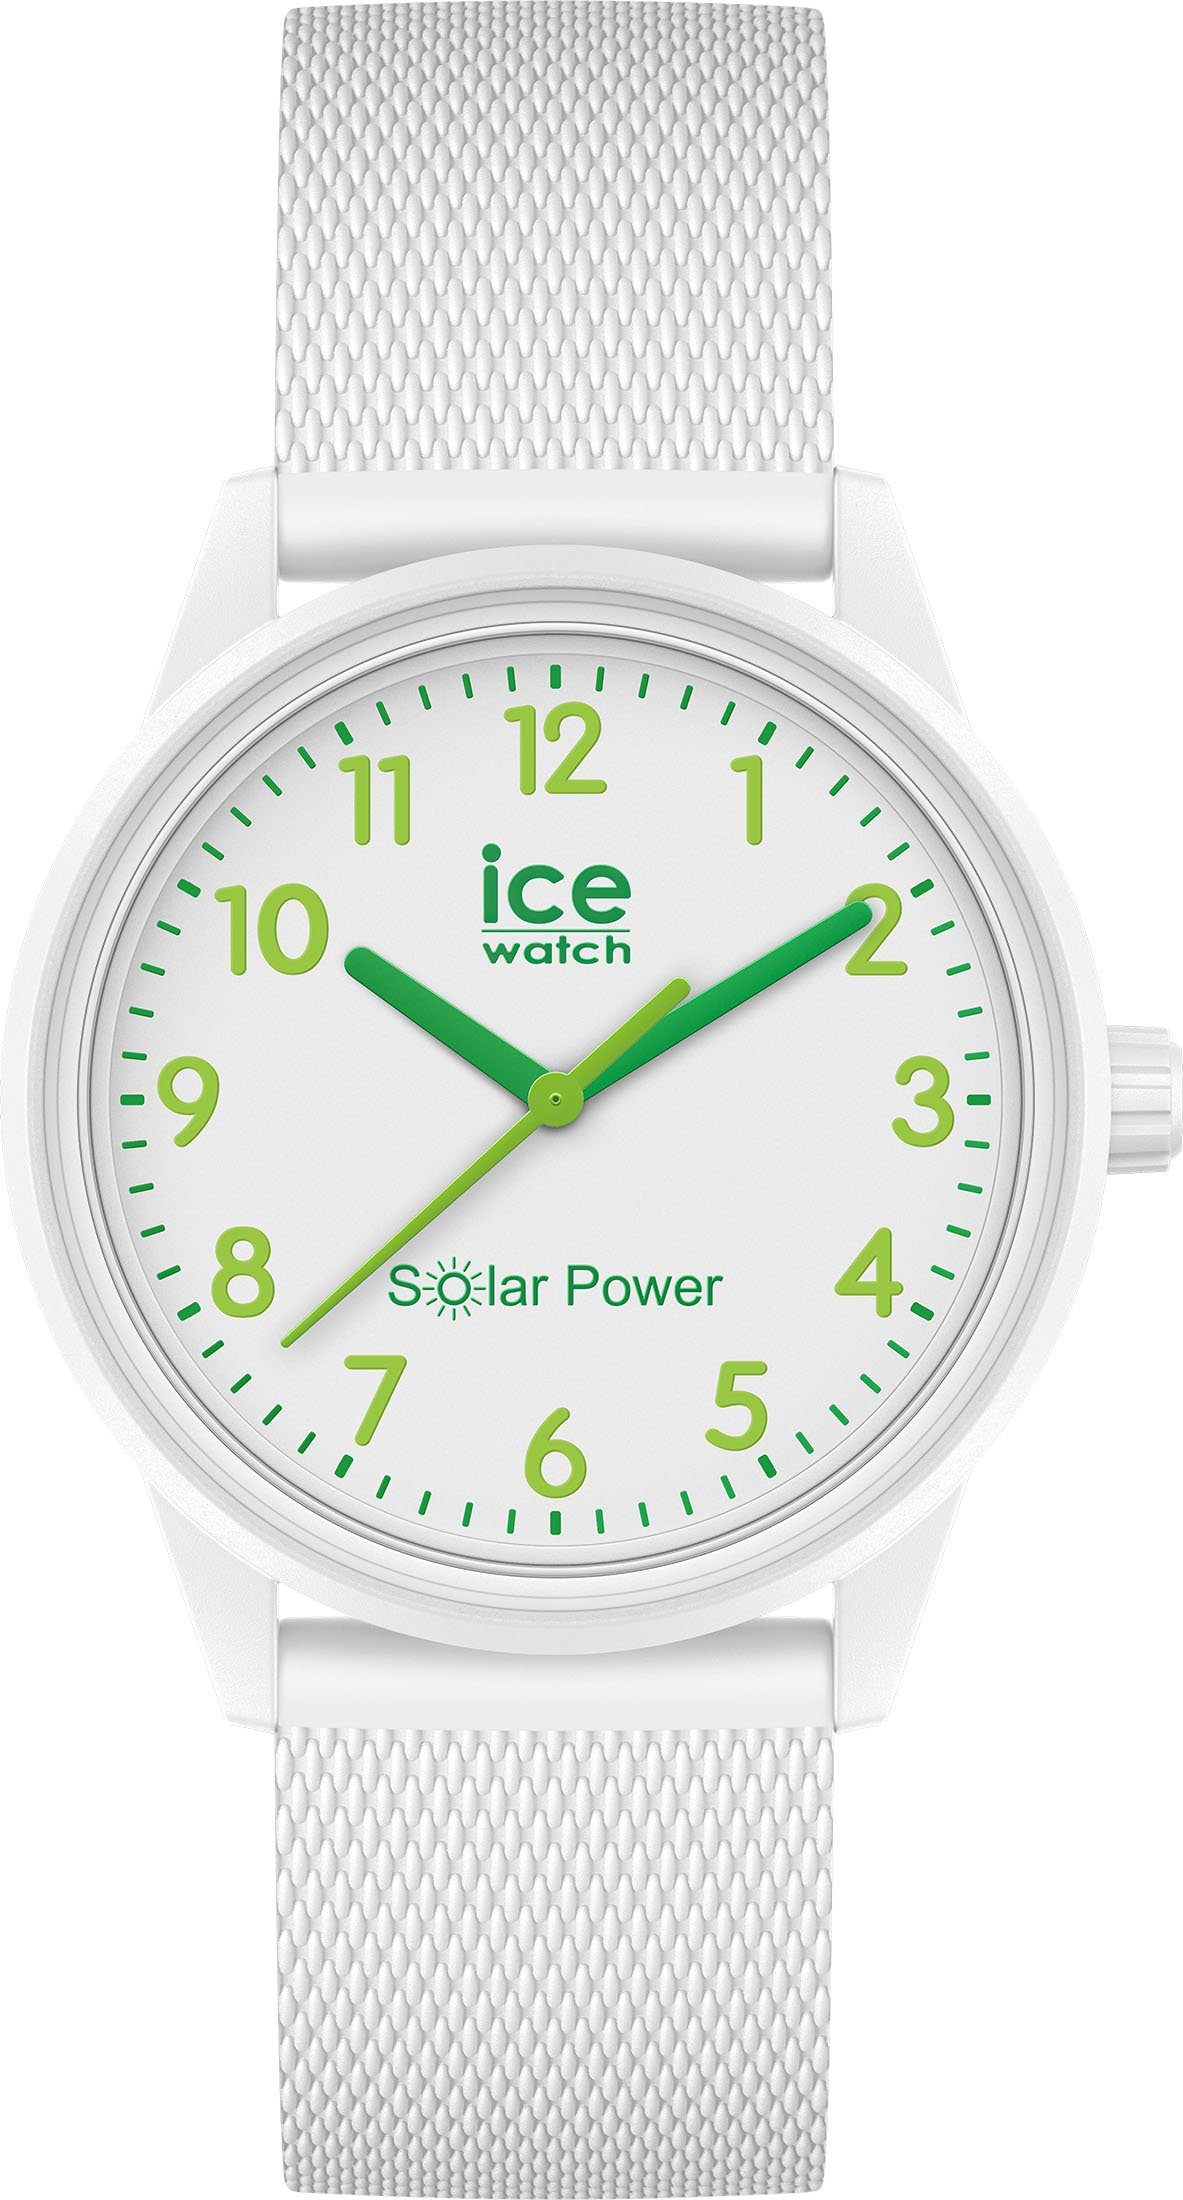 labyrint Toestemming stoomboot ice-watch Solarhorloge ICE solar power, 018739 makkelijk besteld | OTTO